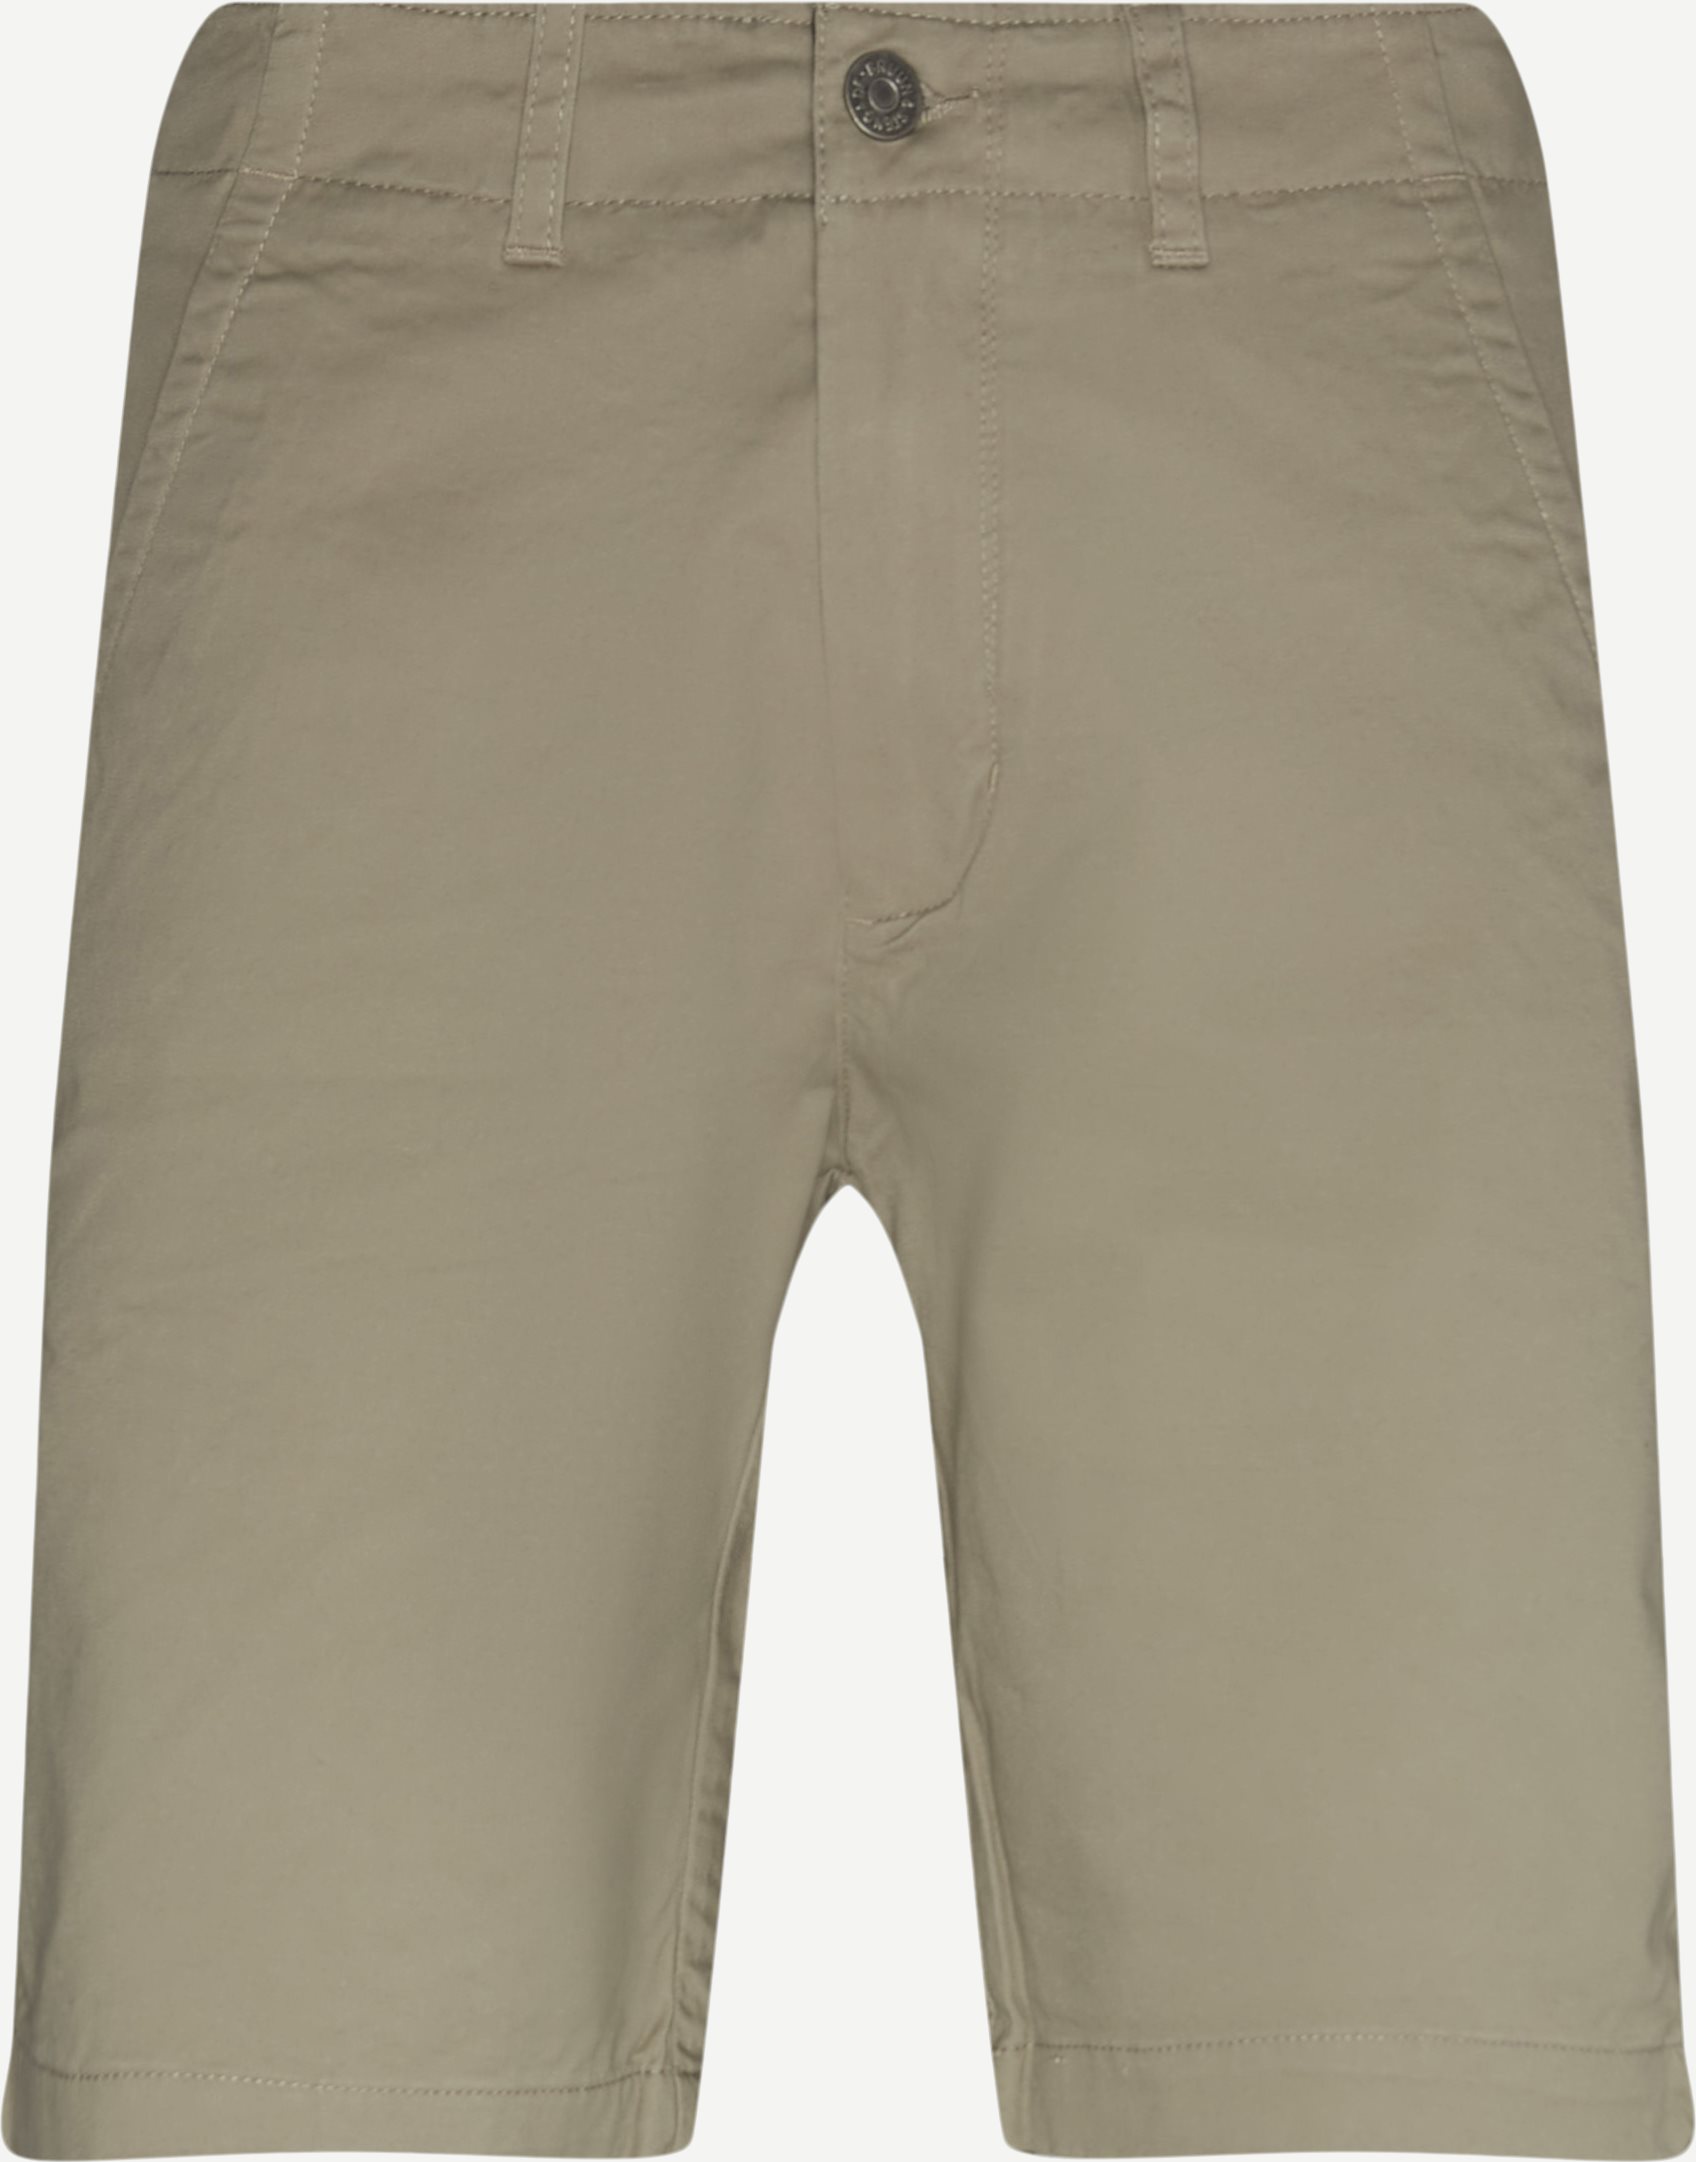 Scherbatsky Shorts - Shorts - Regular fit - Sand